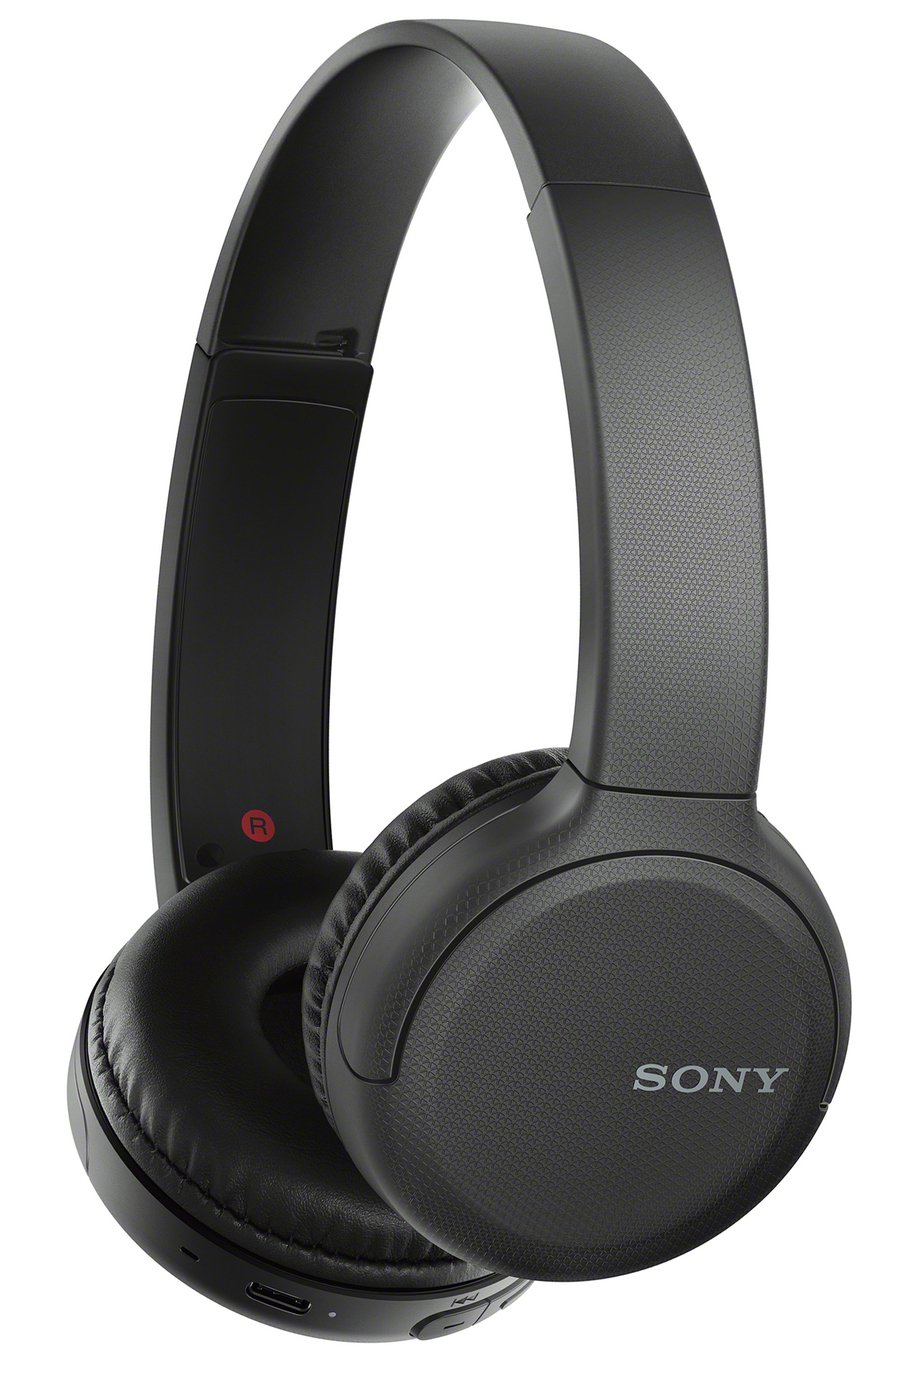 Sony WH-CH510 On-Ear Wireless Headphones - Black